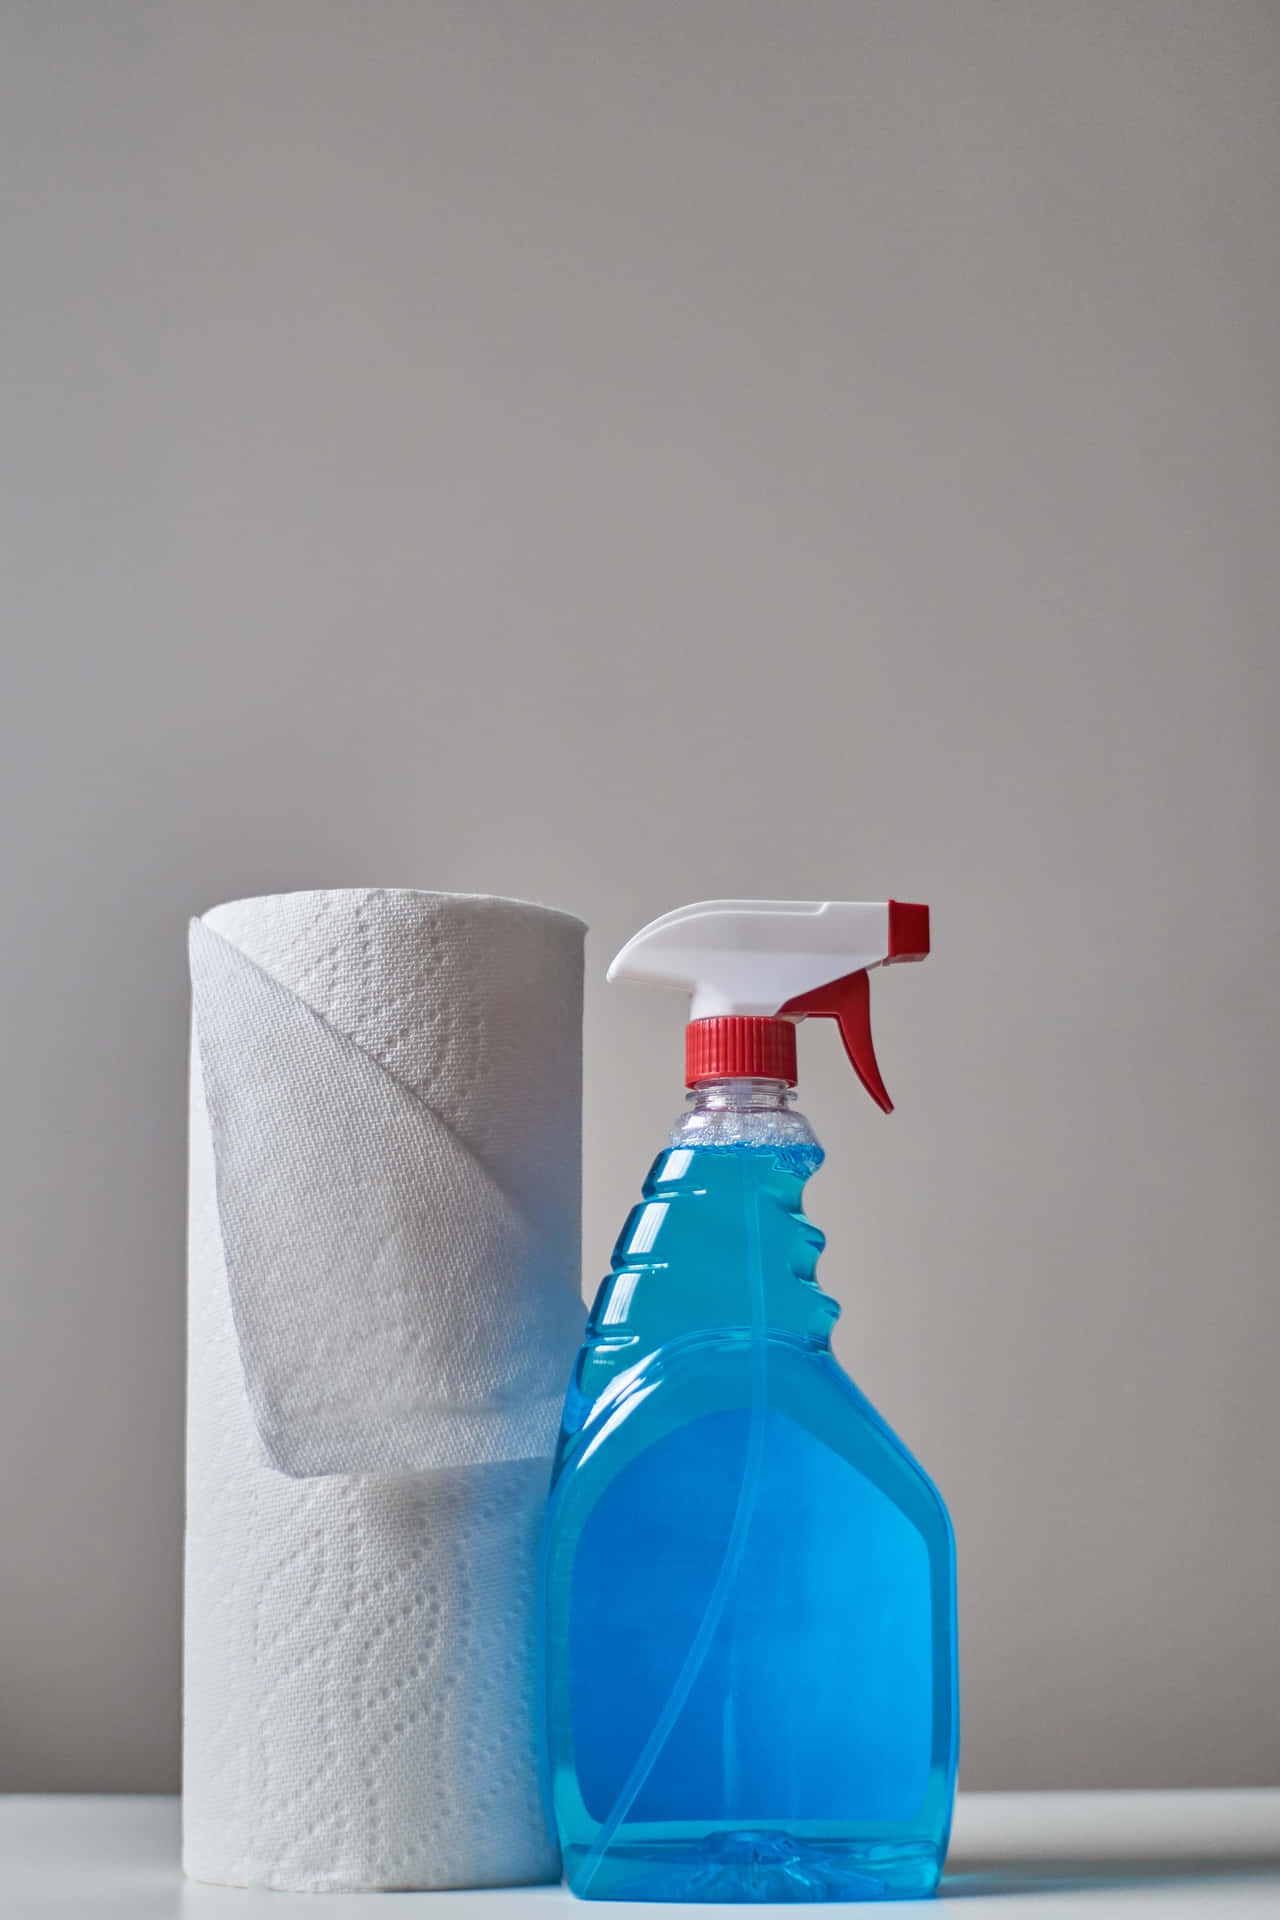 Rene Sanitizer Tissues Wallpaper